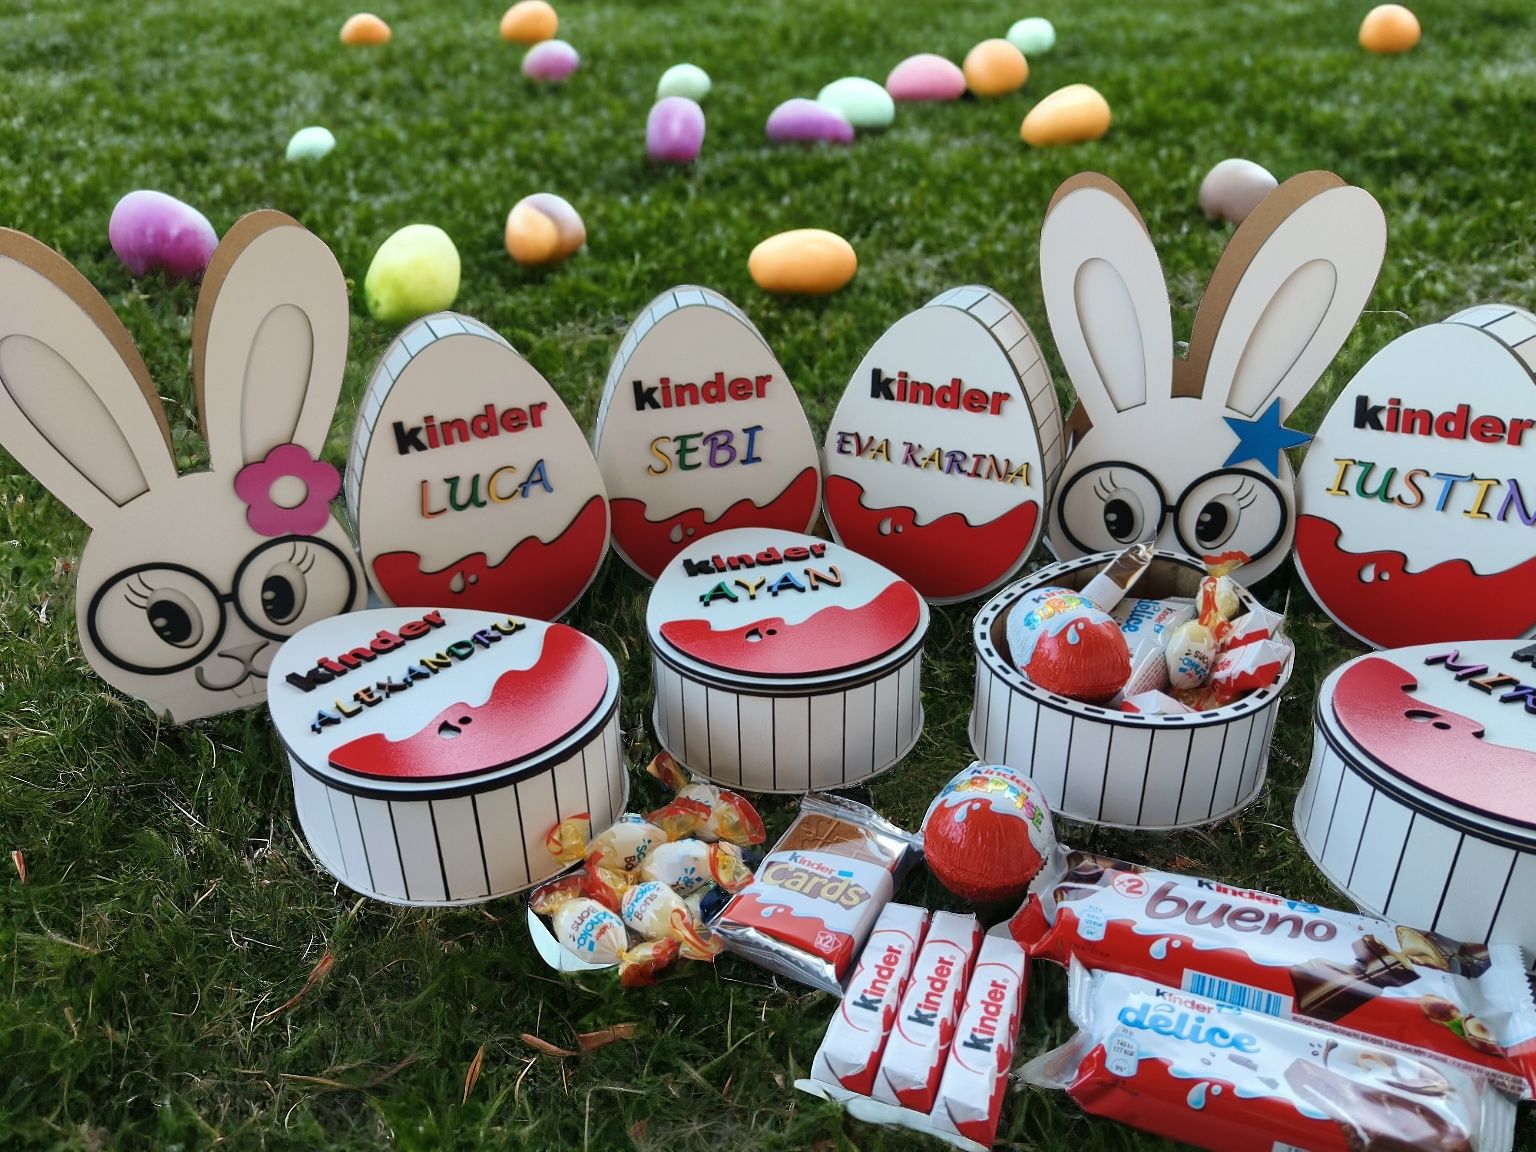 Ouă Kinder personalizate pentru copii